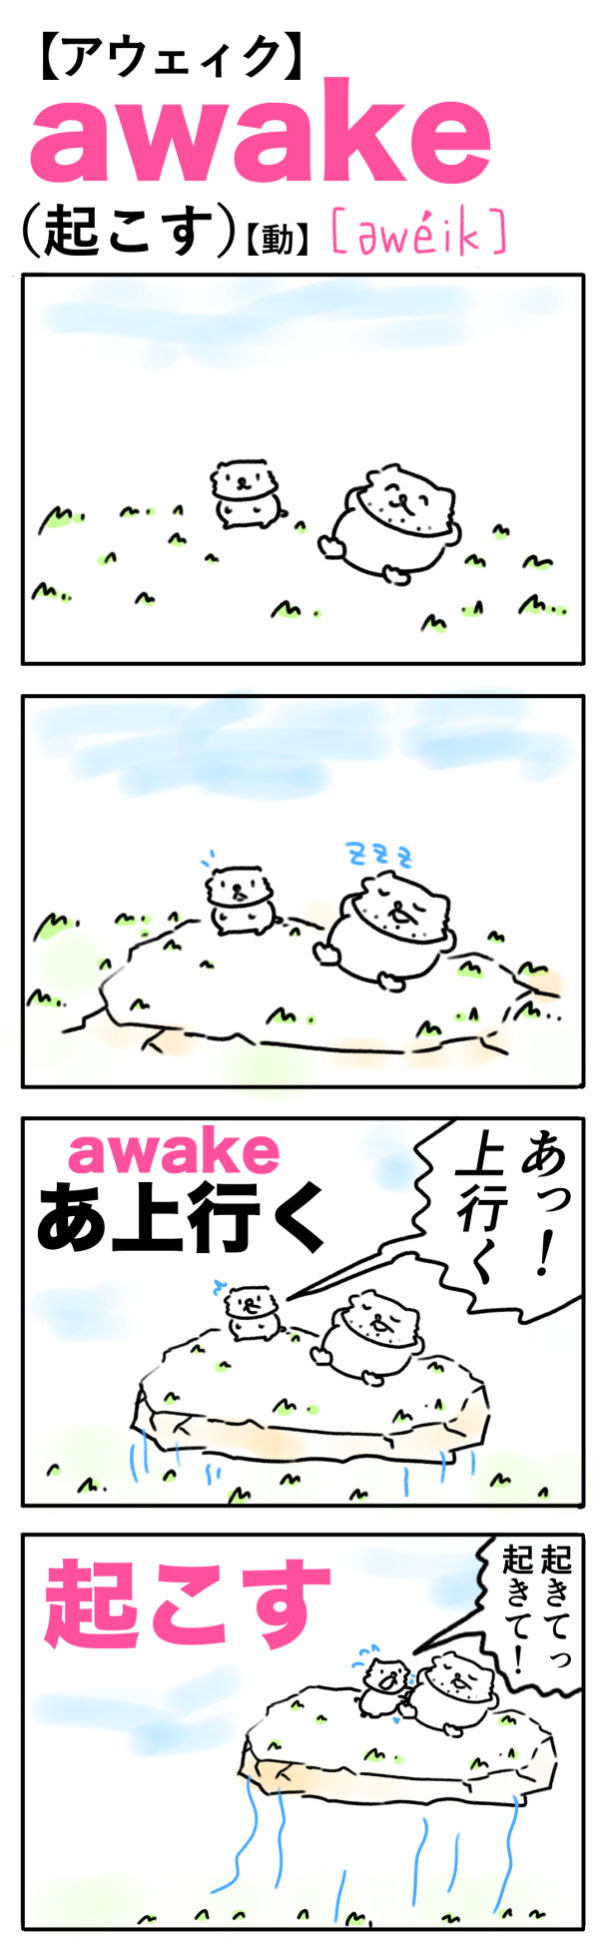 awake（起こす）の語呂合わせ英単語